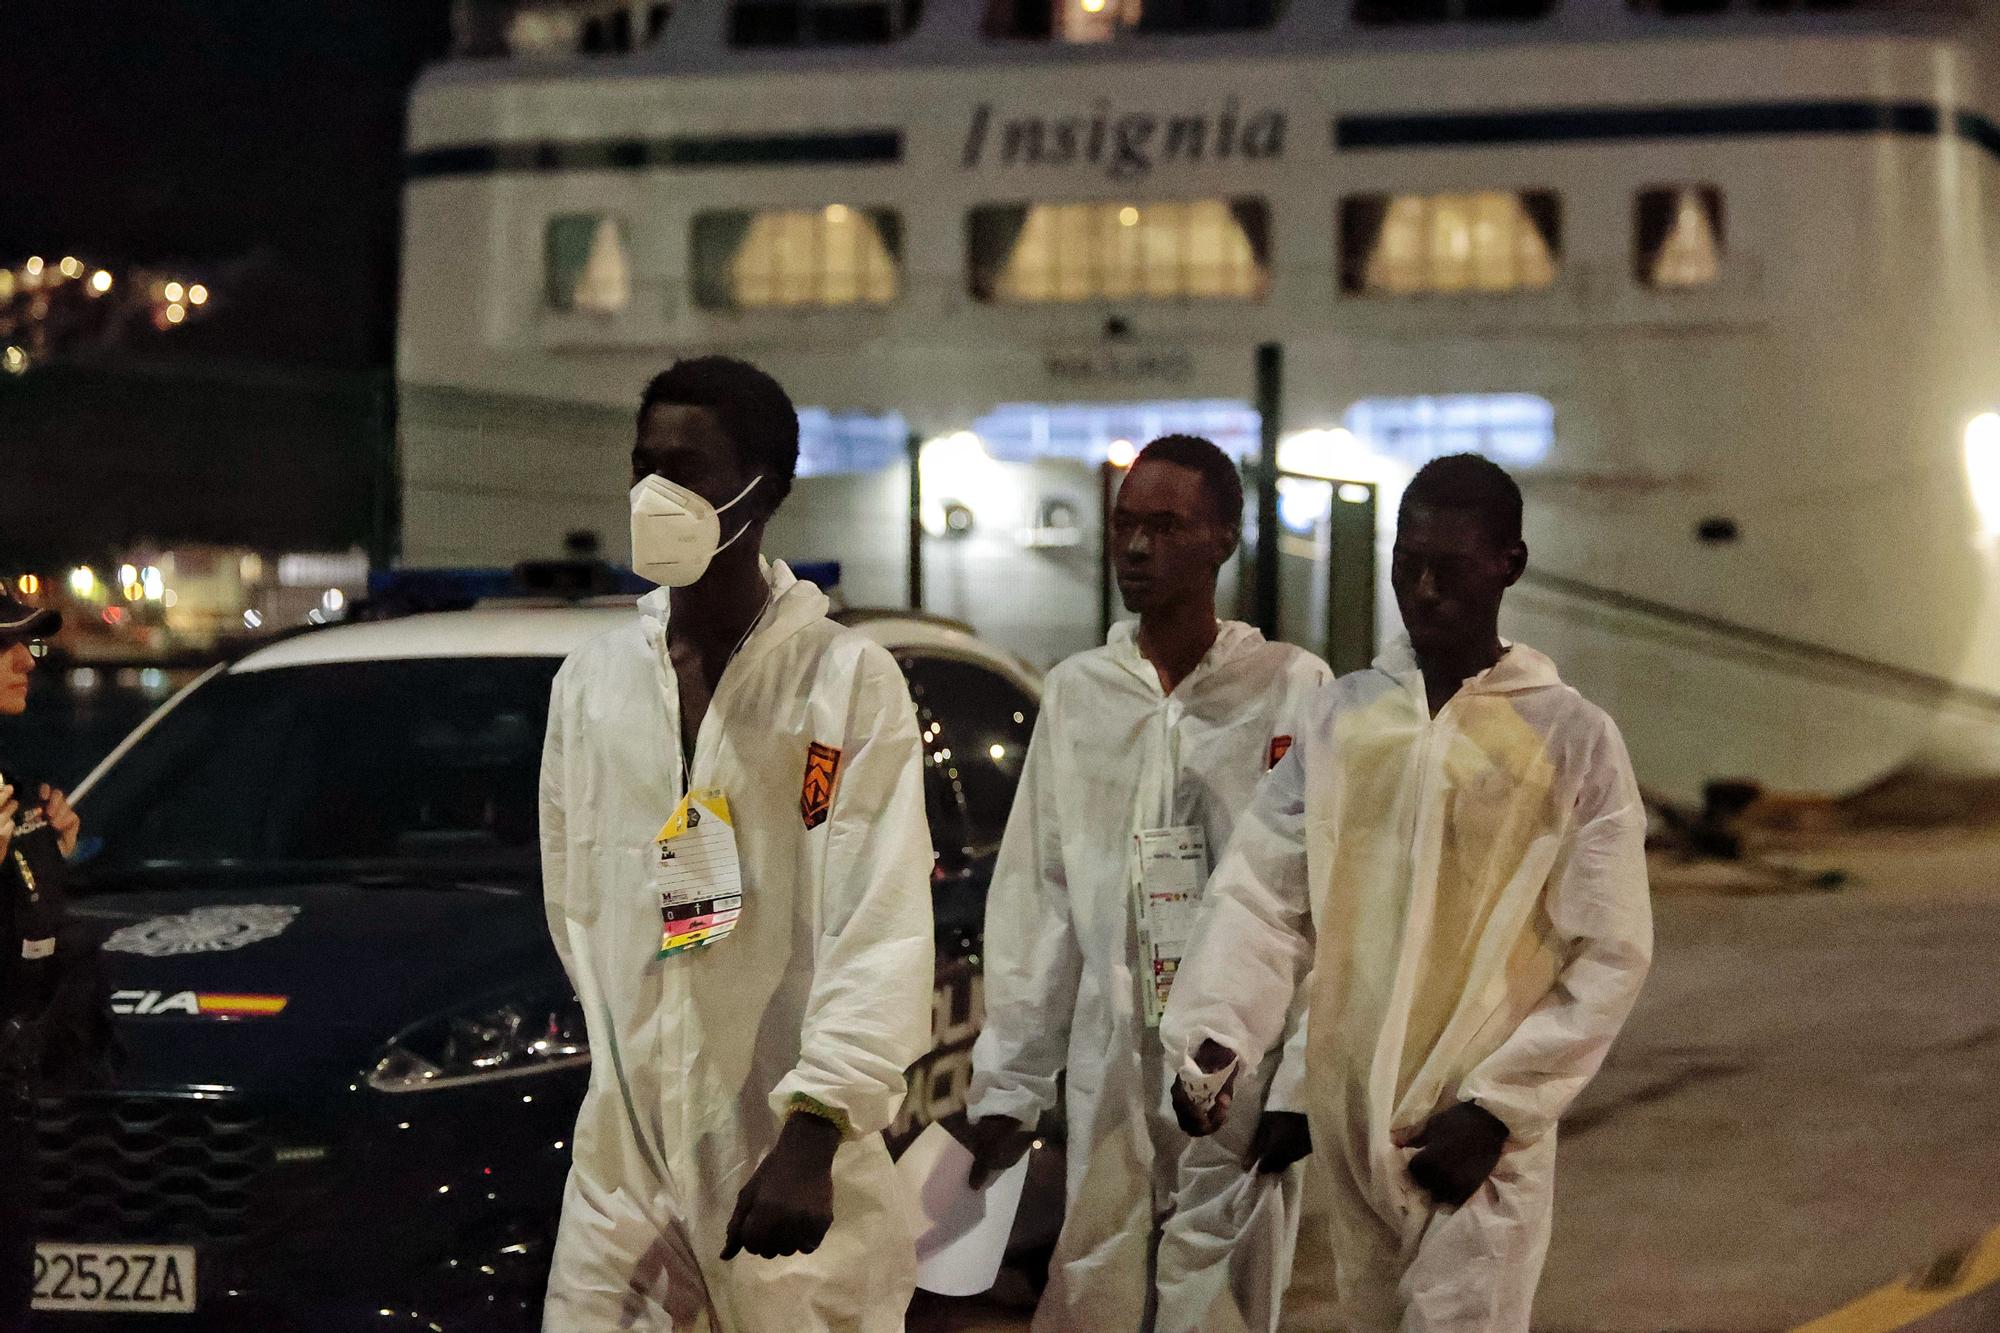 Llegada del Insigna II a Tenerife  que rescató migrantes